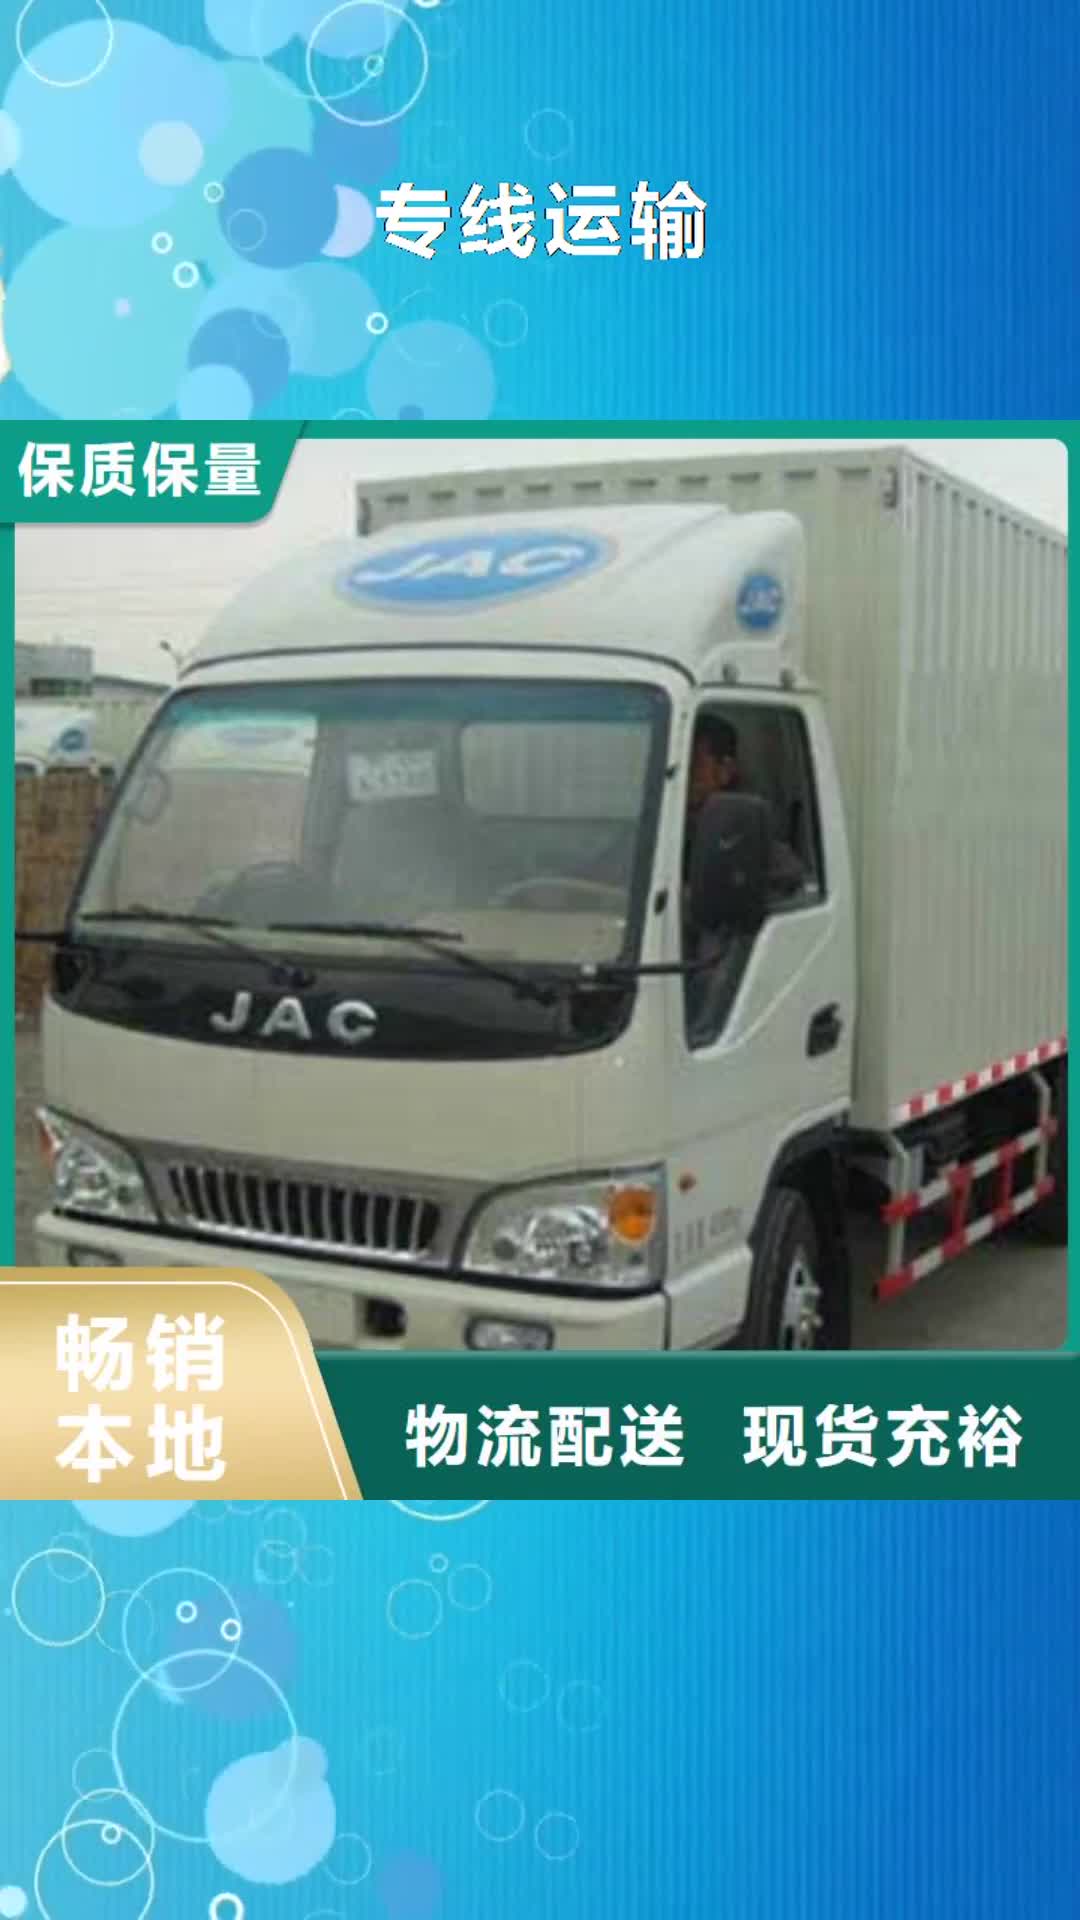 海西【专线运输】,广州到海西物流专线货运公司大件冷藏返程车搬家诚信安全